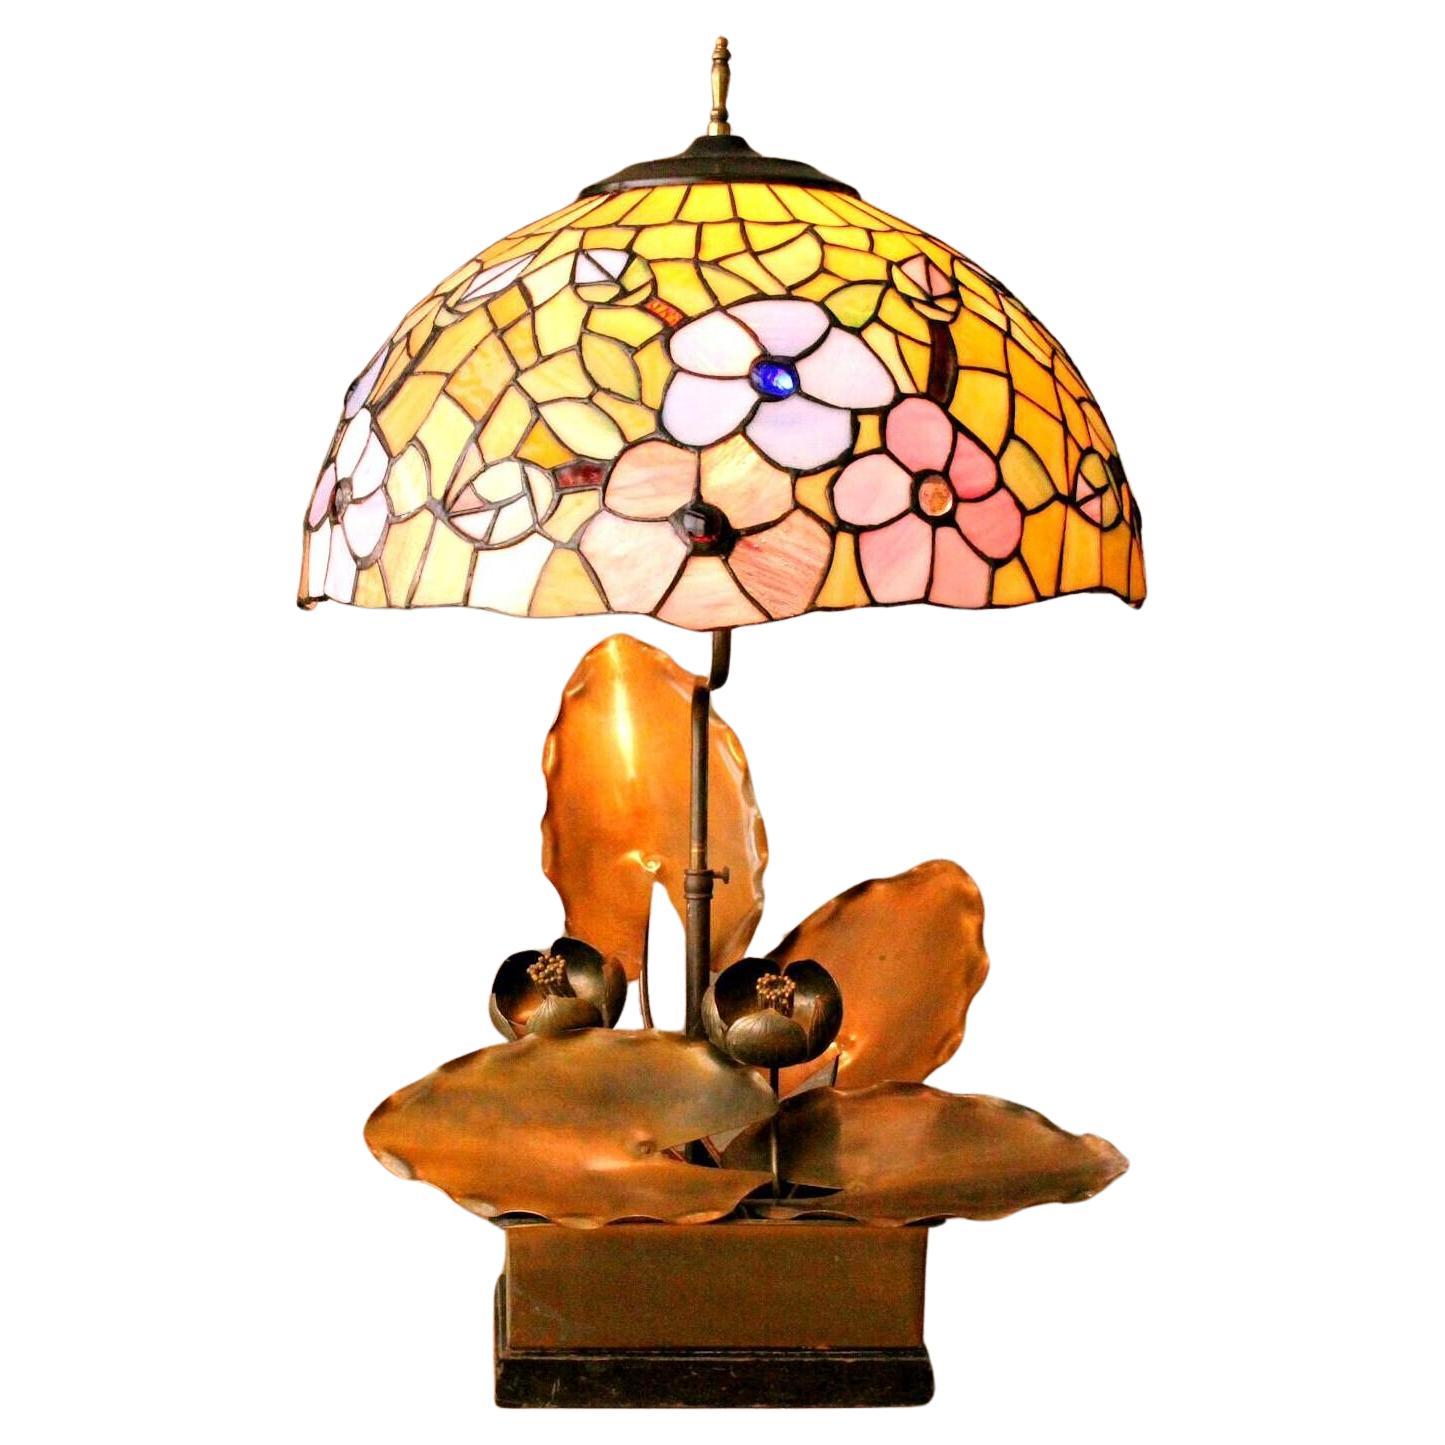 Magificent 1920s Art Nouveau Metal Sculptural Lotus Lamp. Camed Art Glass For Sale